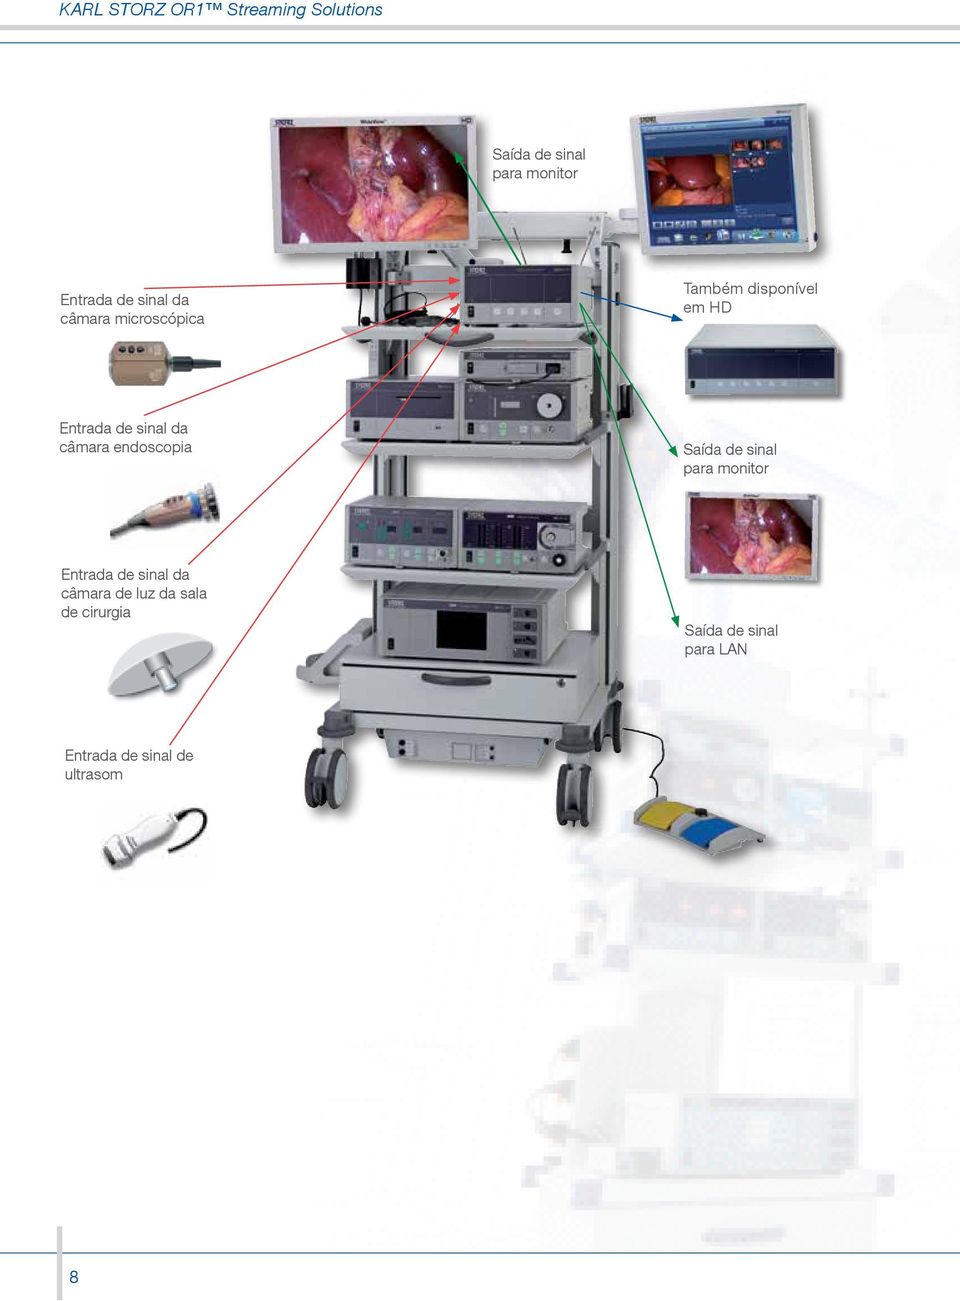 endoscopia  de luz da sala de cirurgia Saída de sinal para LAN